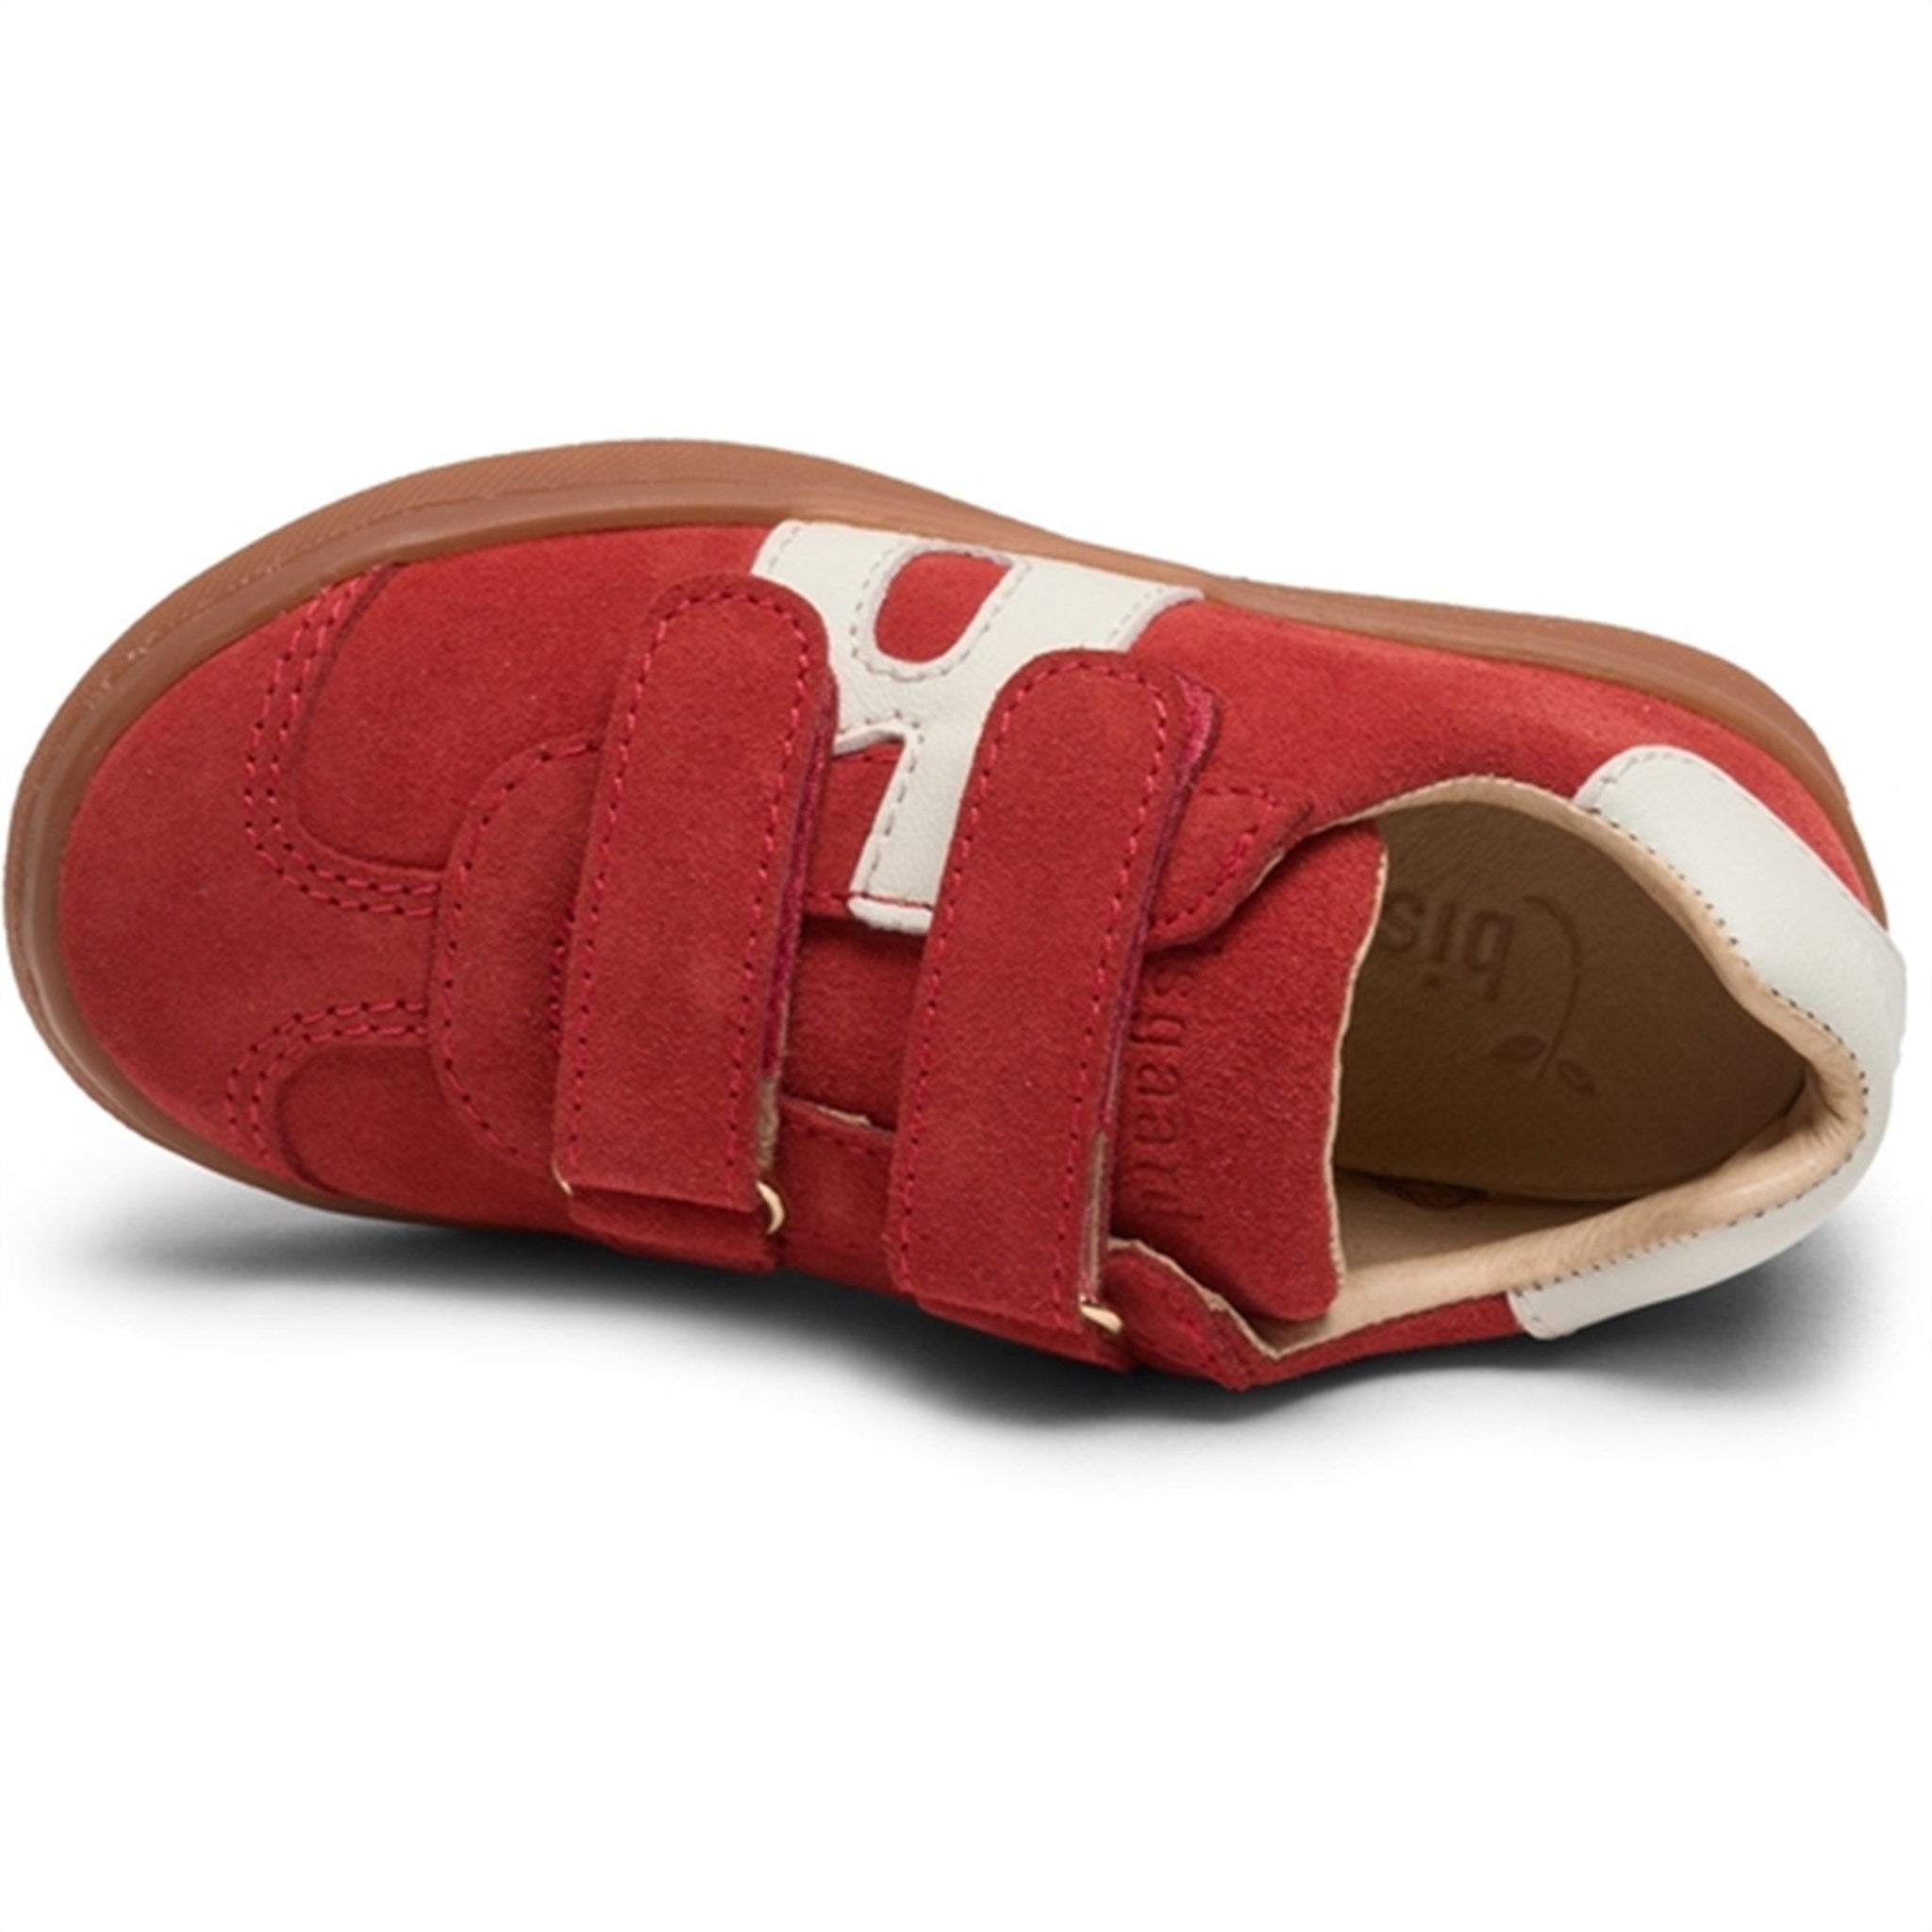 Bisgaard Bay V Kardborreband Sneakers Red 3